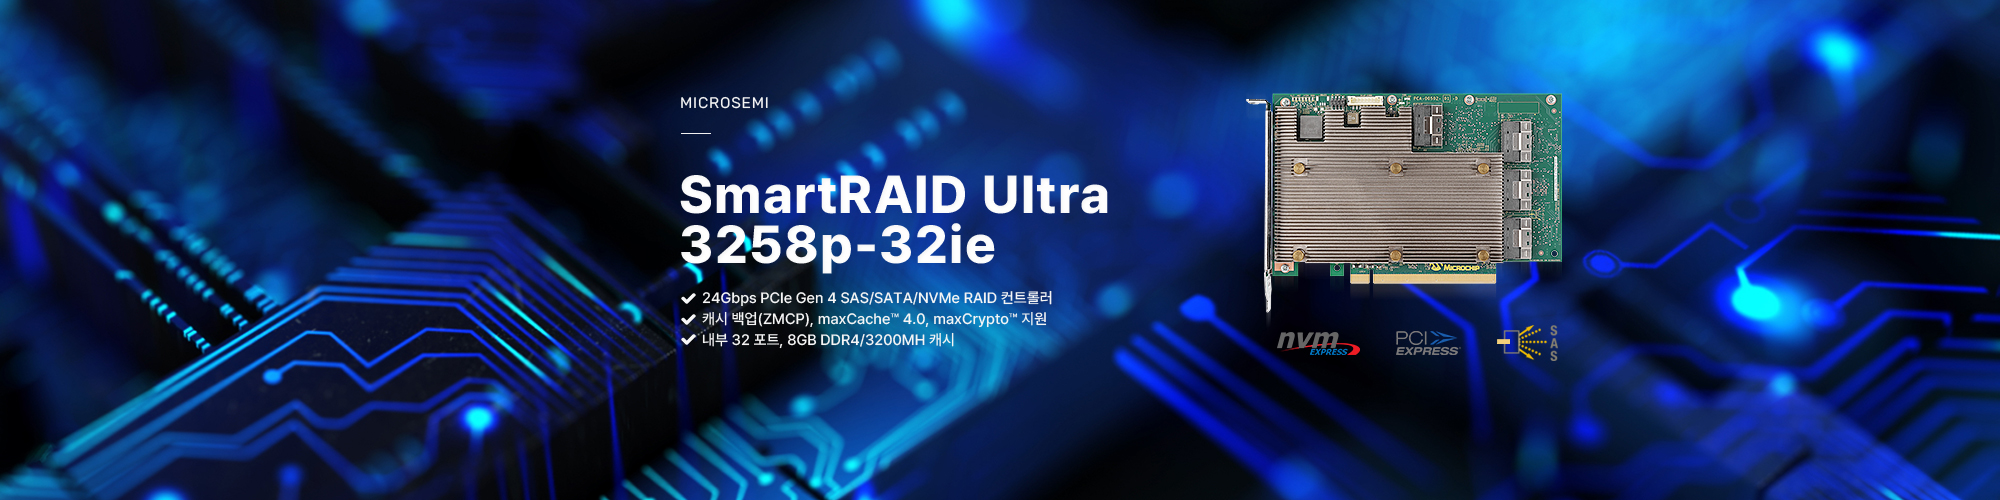 마이크로세미 아답텍 12Gbps PCIe Gen3 SmartRAID 컨트롤러, SmartRAID 3154-16 제품보러가기